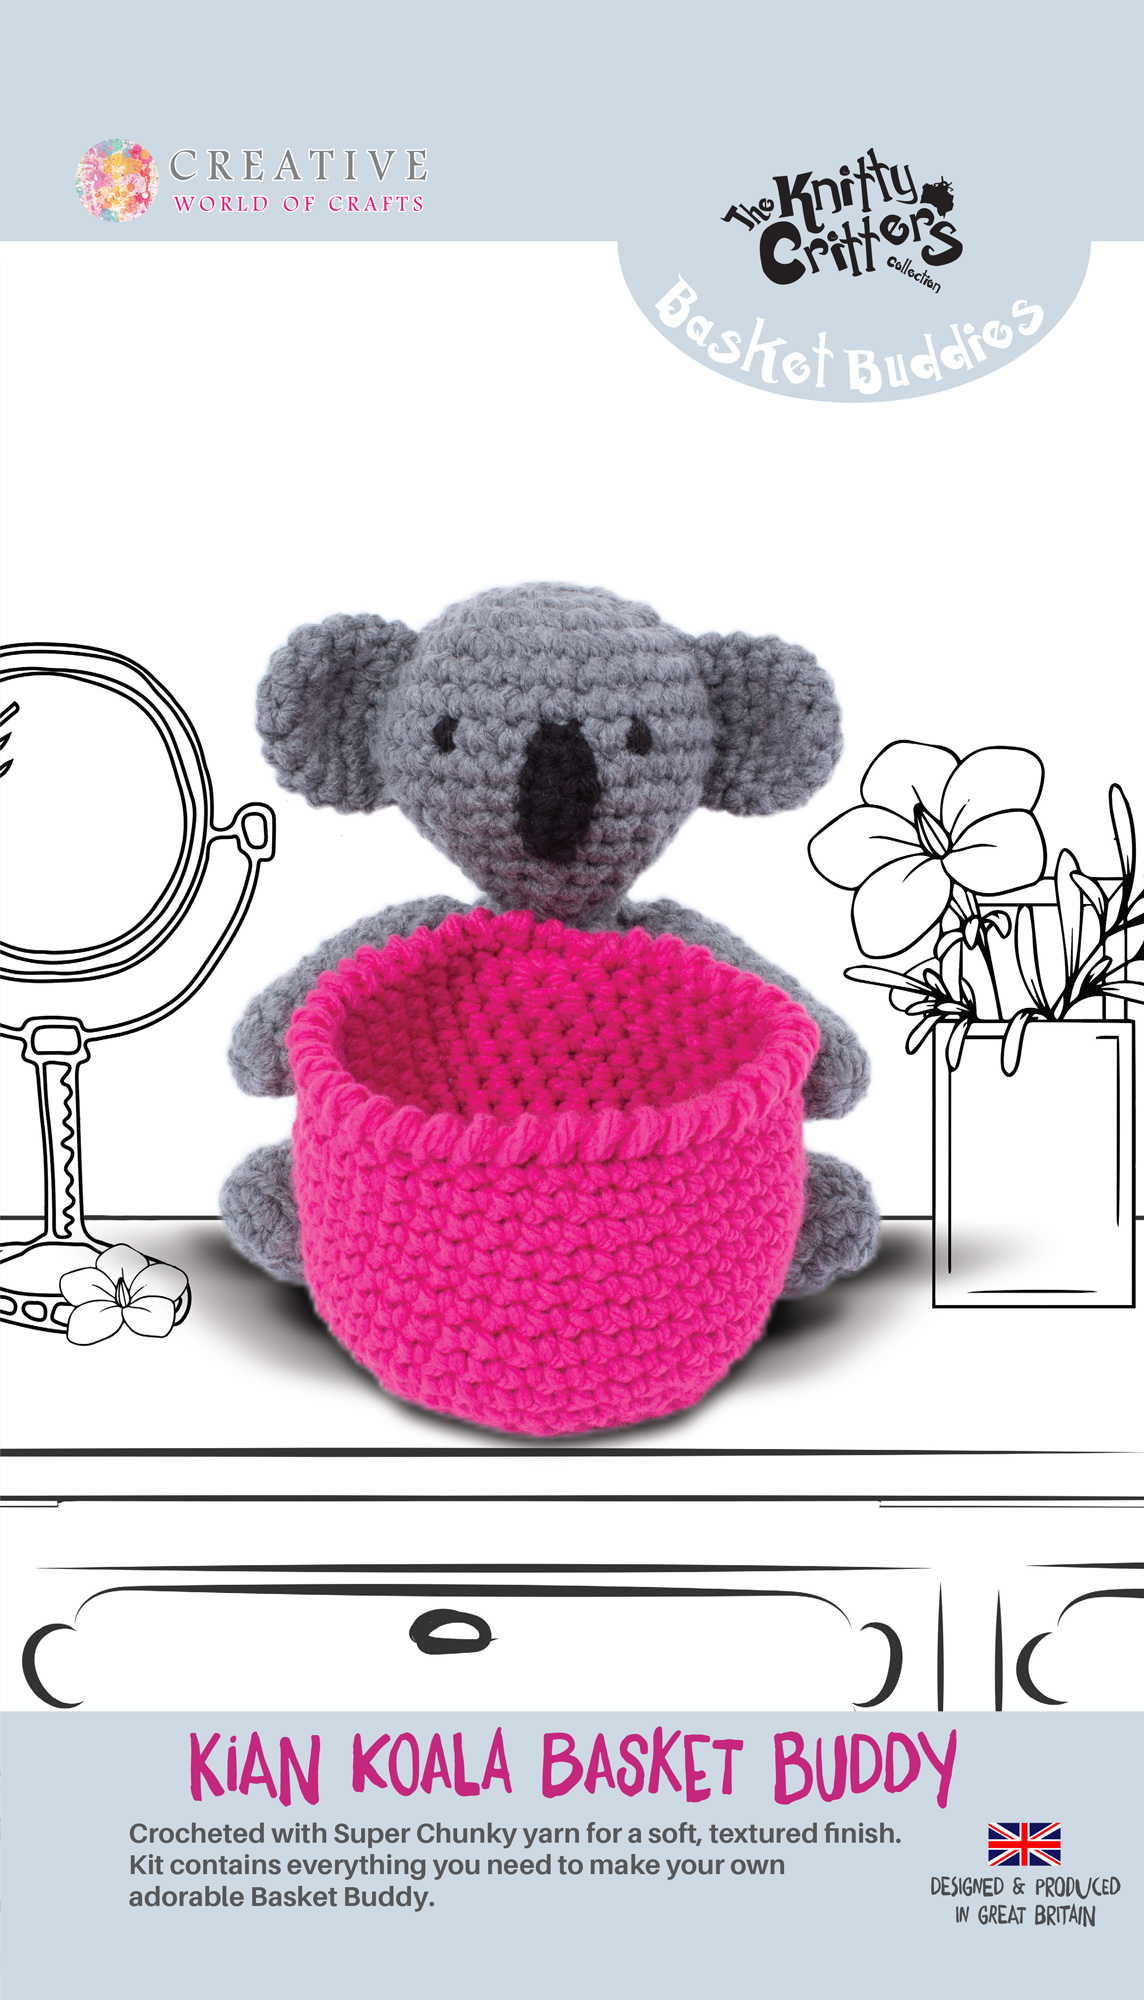 Knitty Critters - Basket Buddies - Kian Koala